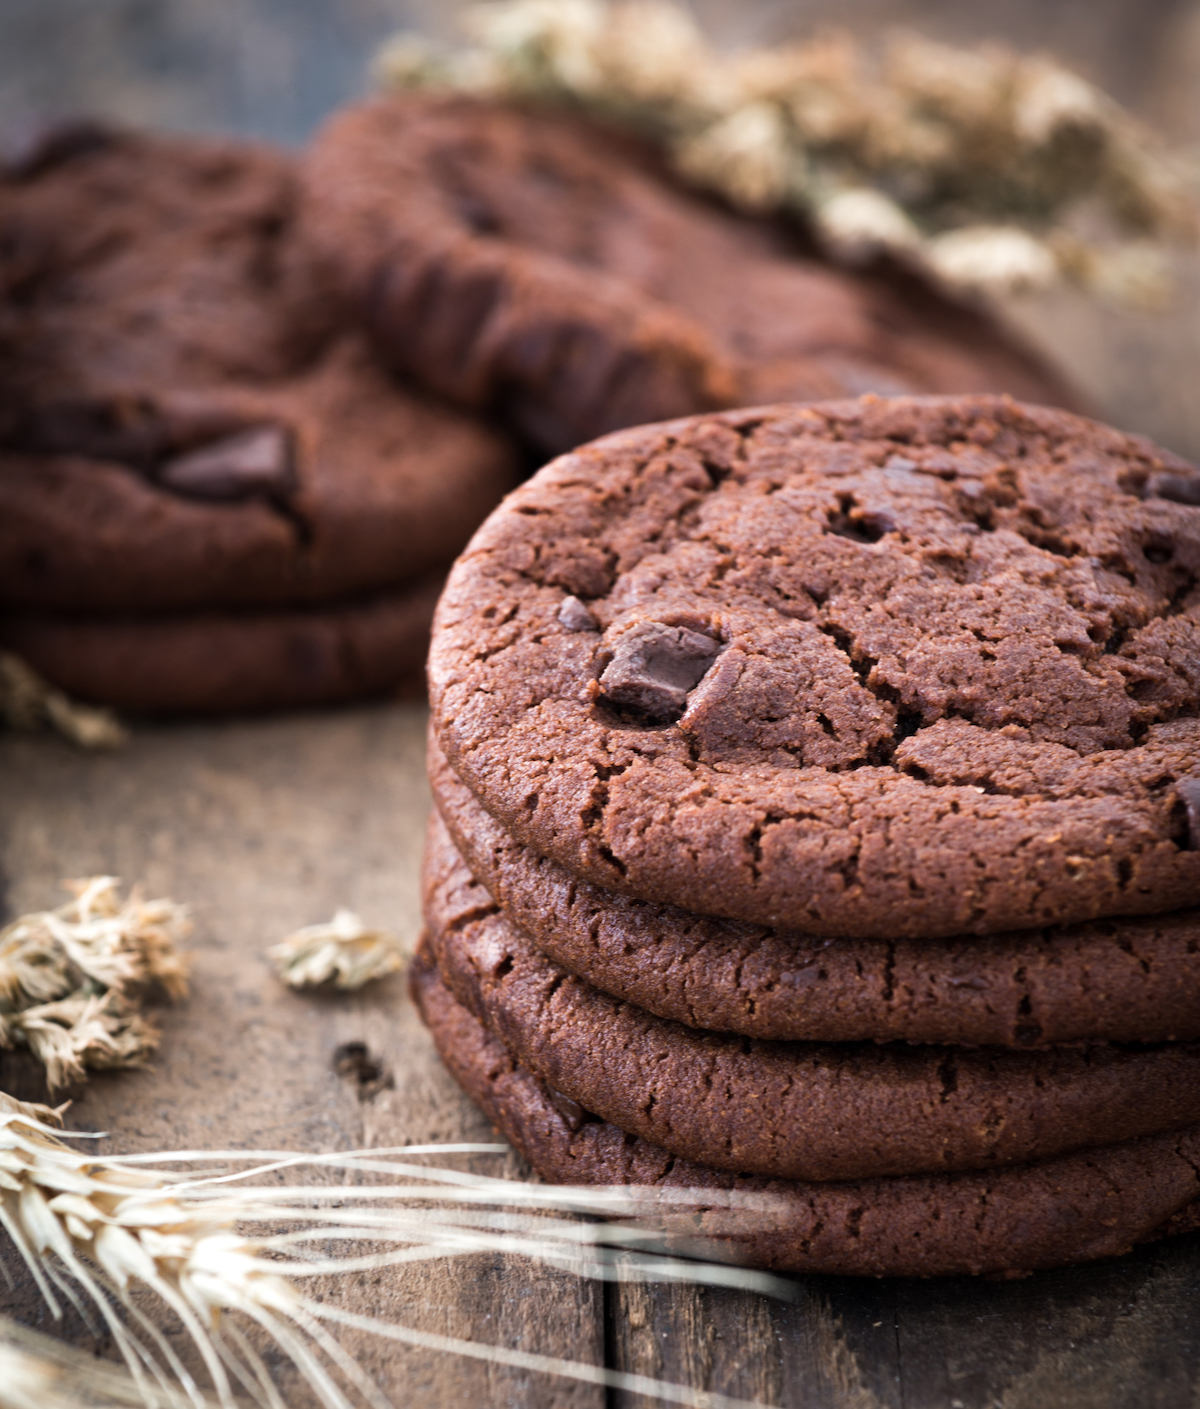 Cookies indulgence au chocolat ©Chachamp shutterstock